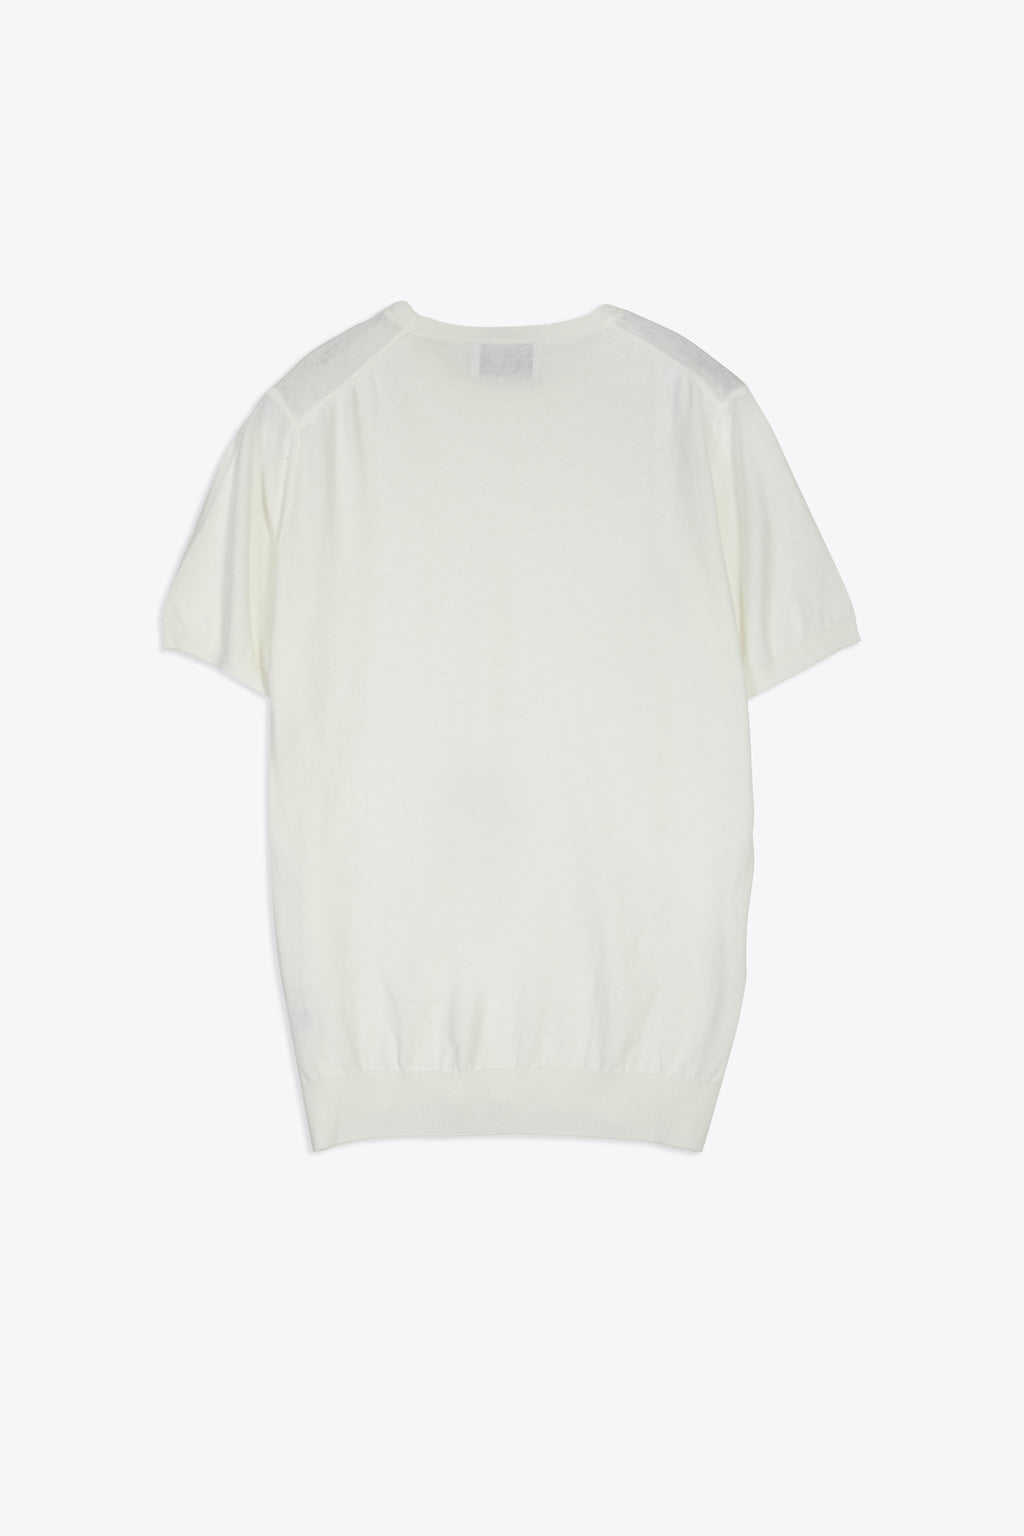 alt-image__White-cotton-knit-t-shirt